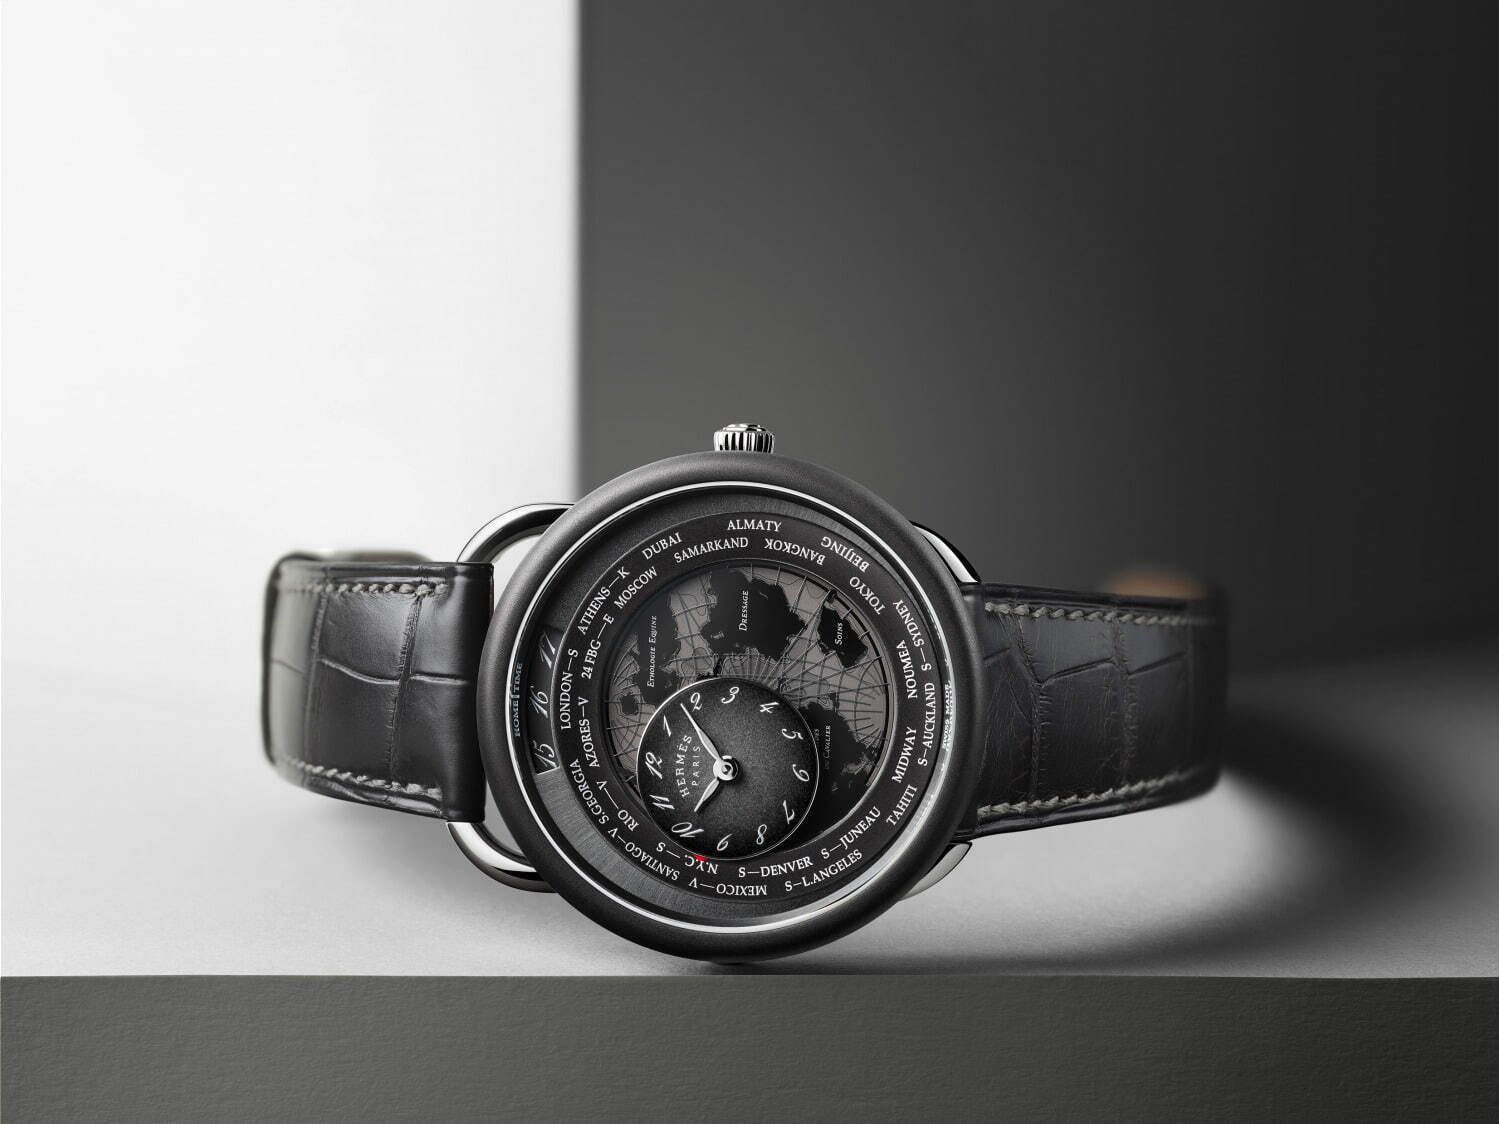 エルメスの腕時計《アルソー》“乗馬の世界地図”を描いた新作ウォッチ